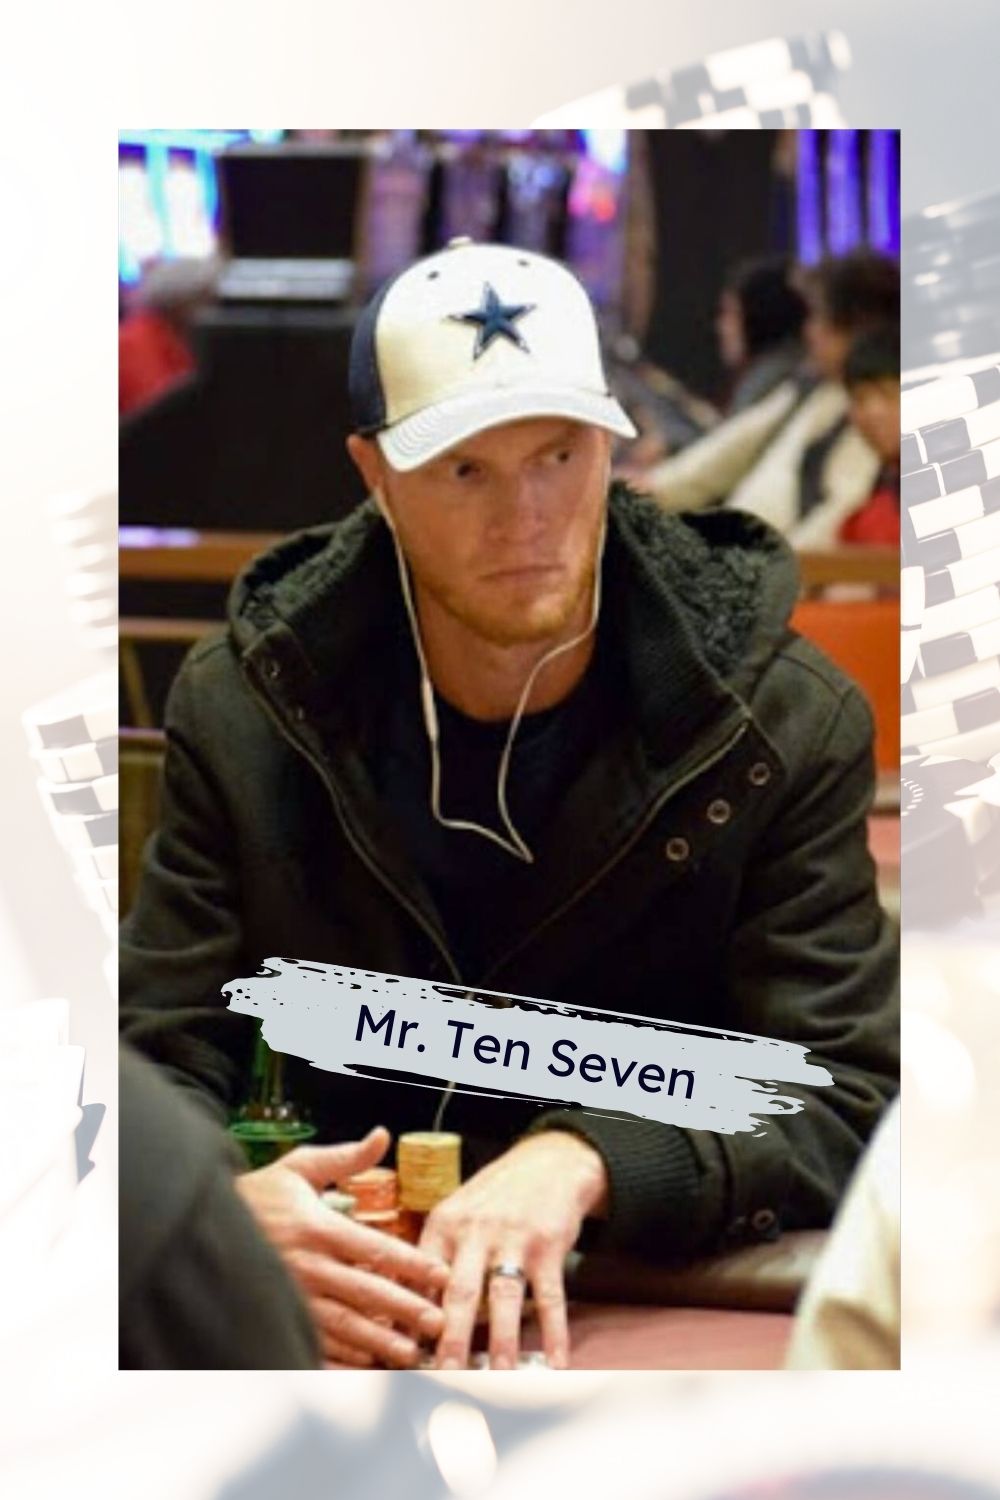 Mr. Ten Seven